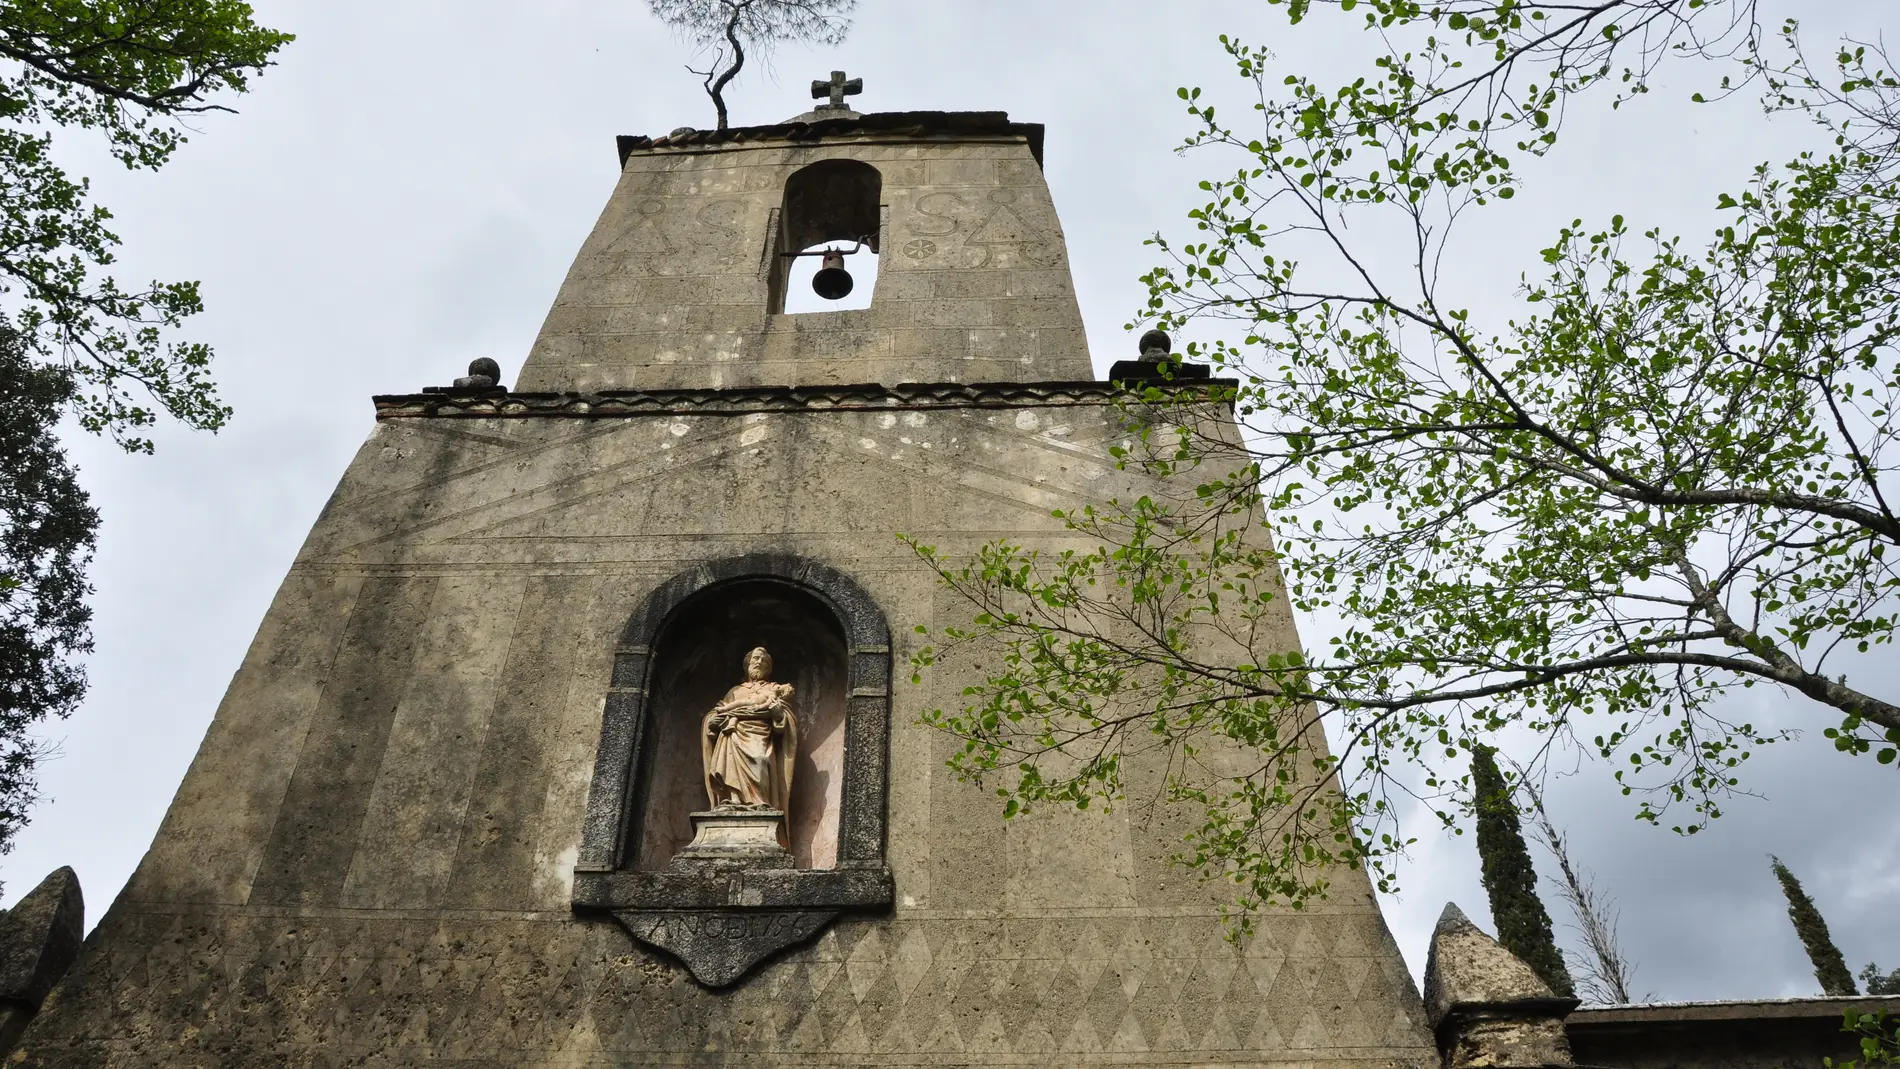 Monasterio de las Batuecas